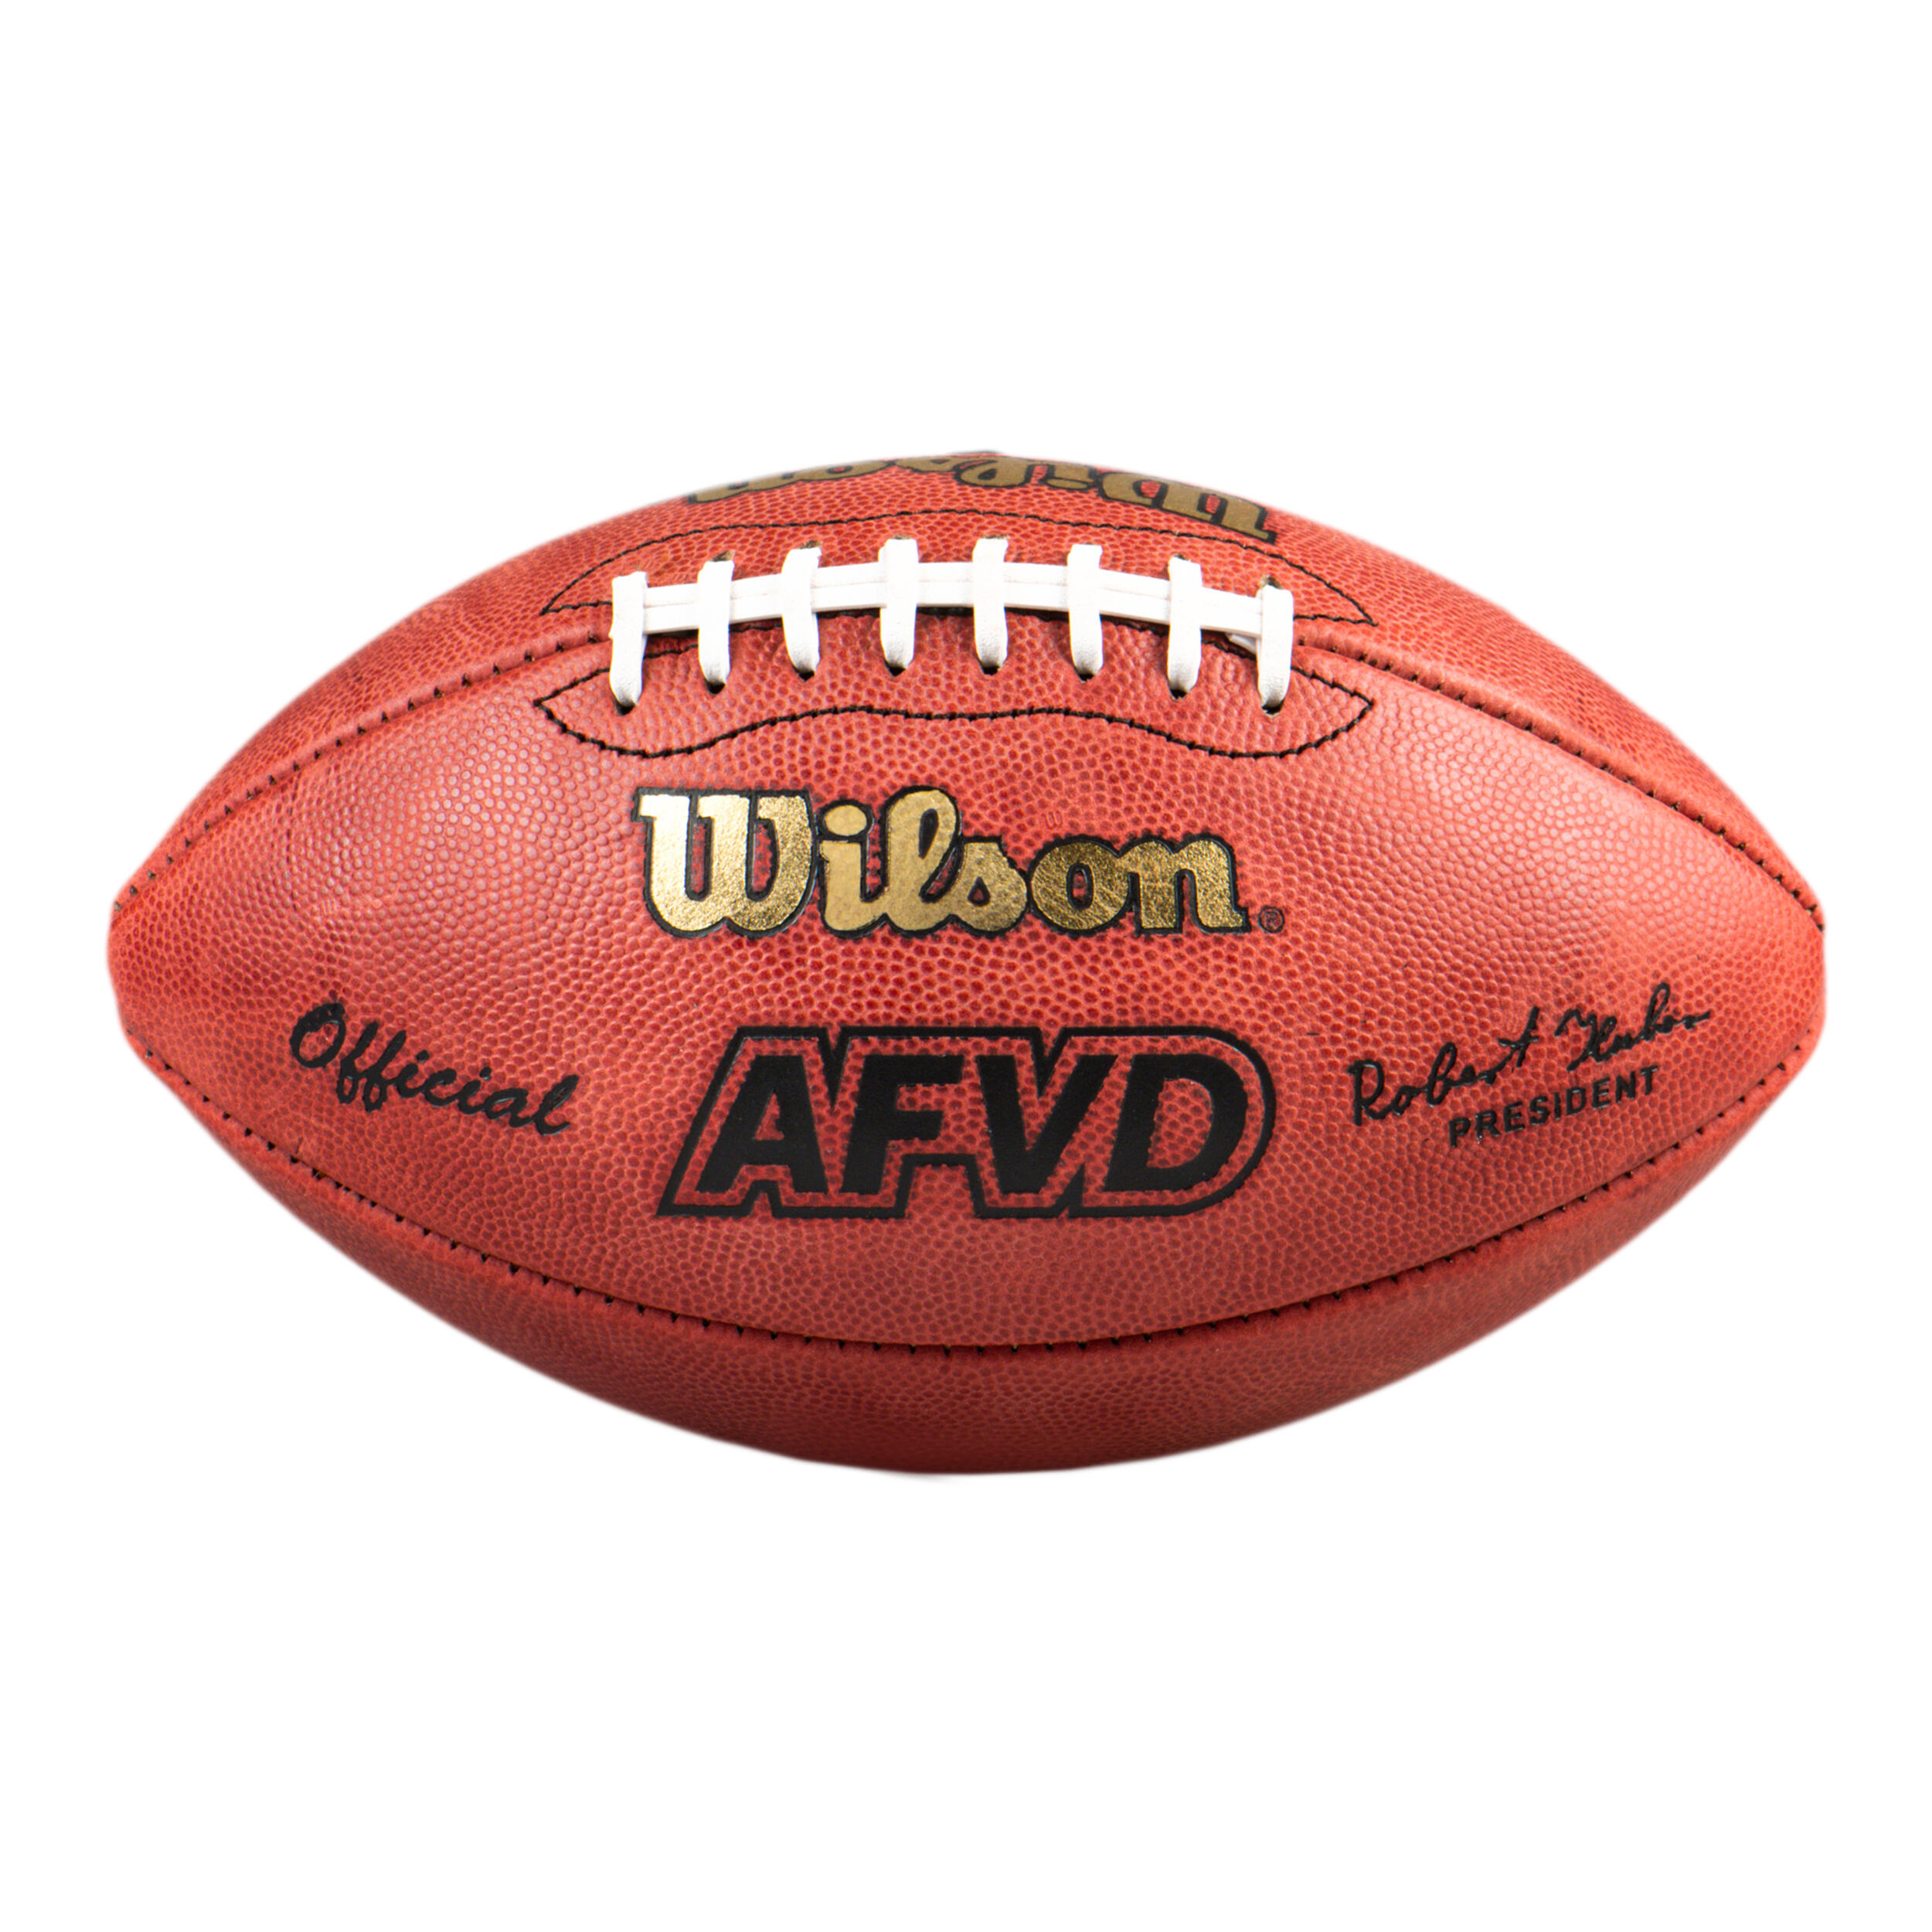 WILSON Ballon De Football Am&#xE9;ricain Officiel - Afvd Game Ball Wtf1000 Marron